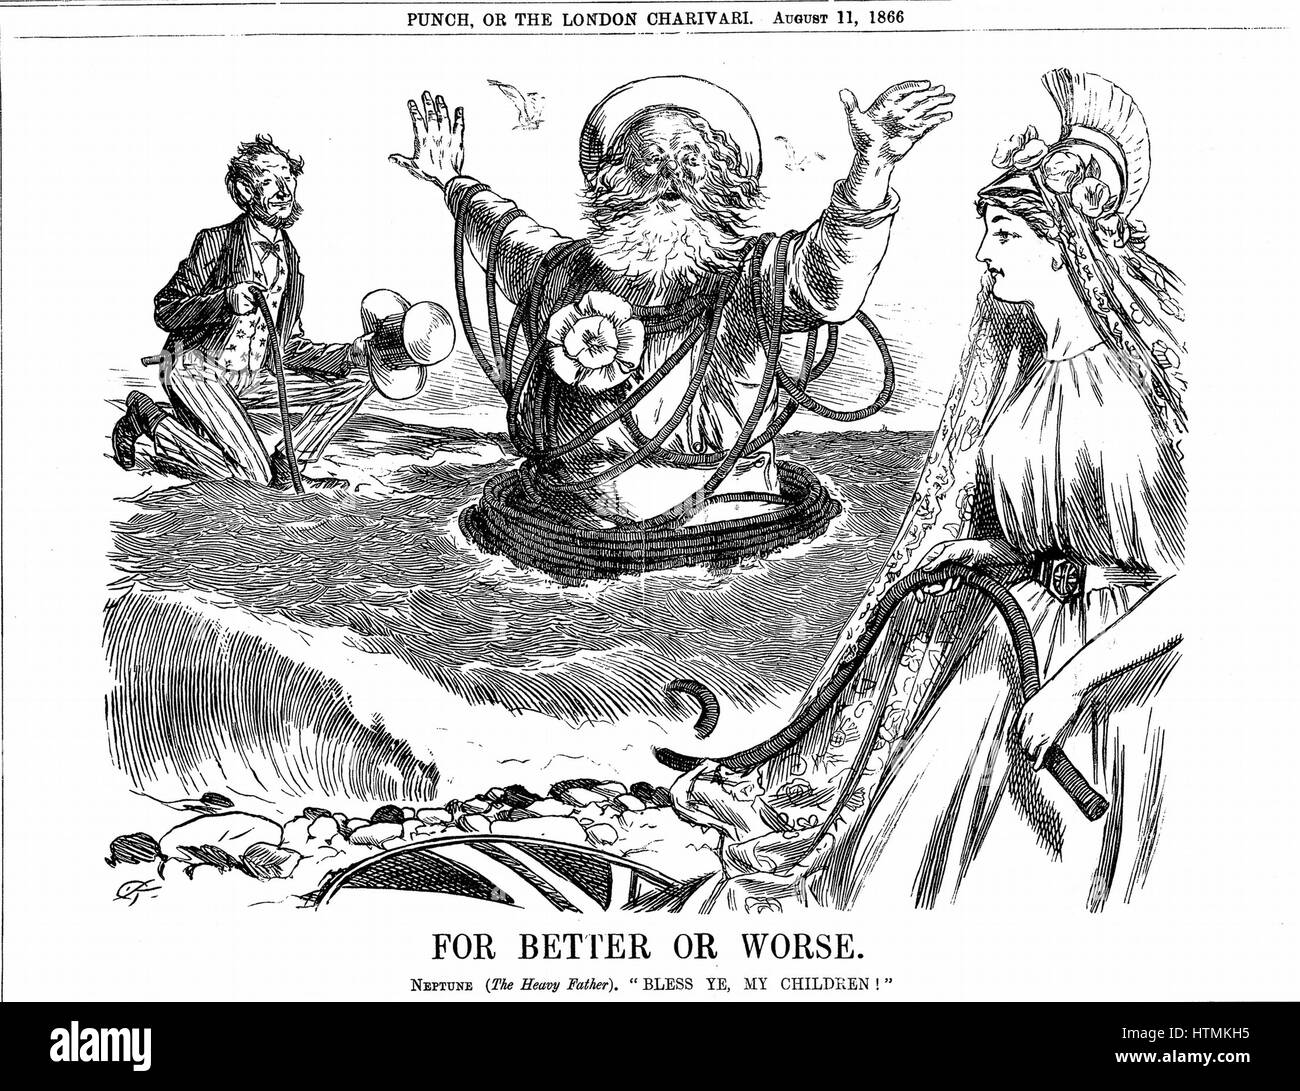 Atlantic Telegraph: Vater Neptune Segen Britannia und Uncle Sam auf die erfolgreiche Verlegung des Atlantic Telegraph Kabels. Cartoon 'Punch' London 11. August 1866 Stockfoto